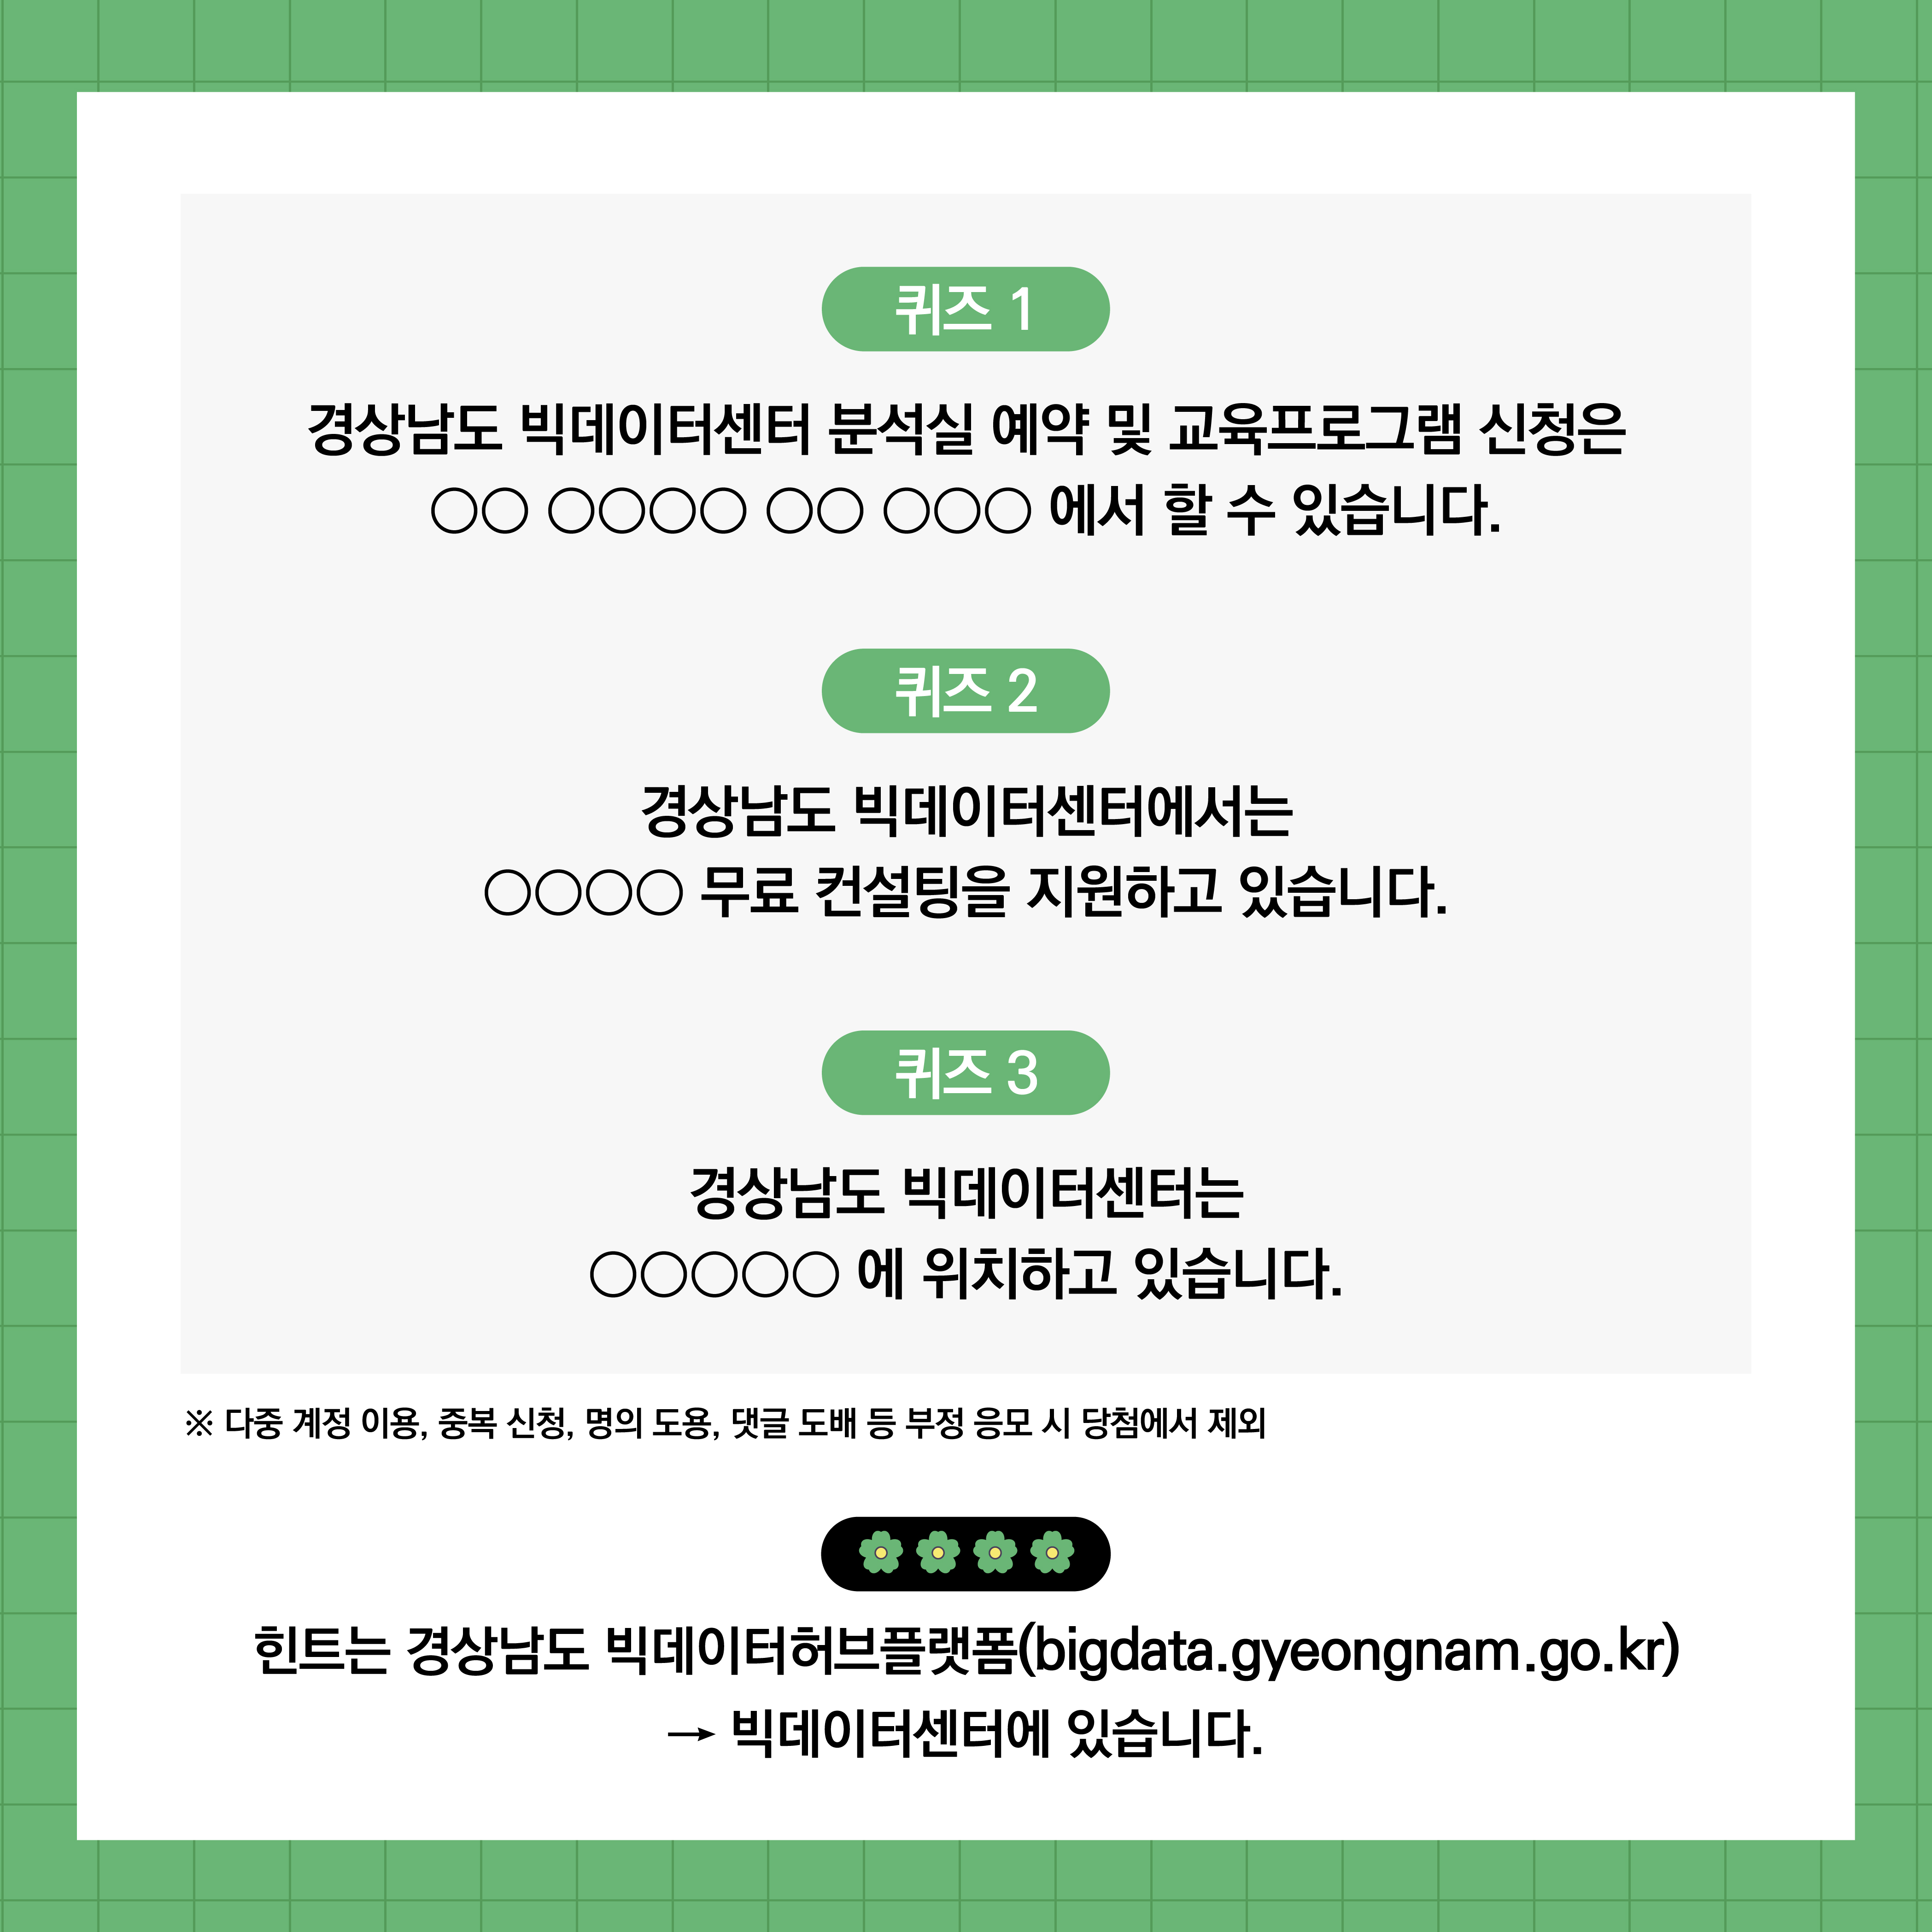 「경상남도 빅데이터센터」 봄맞이 이벤트 실시 3